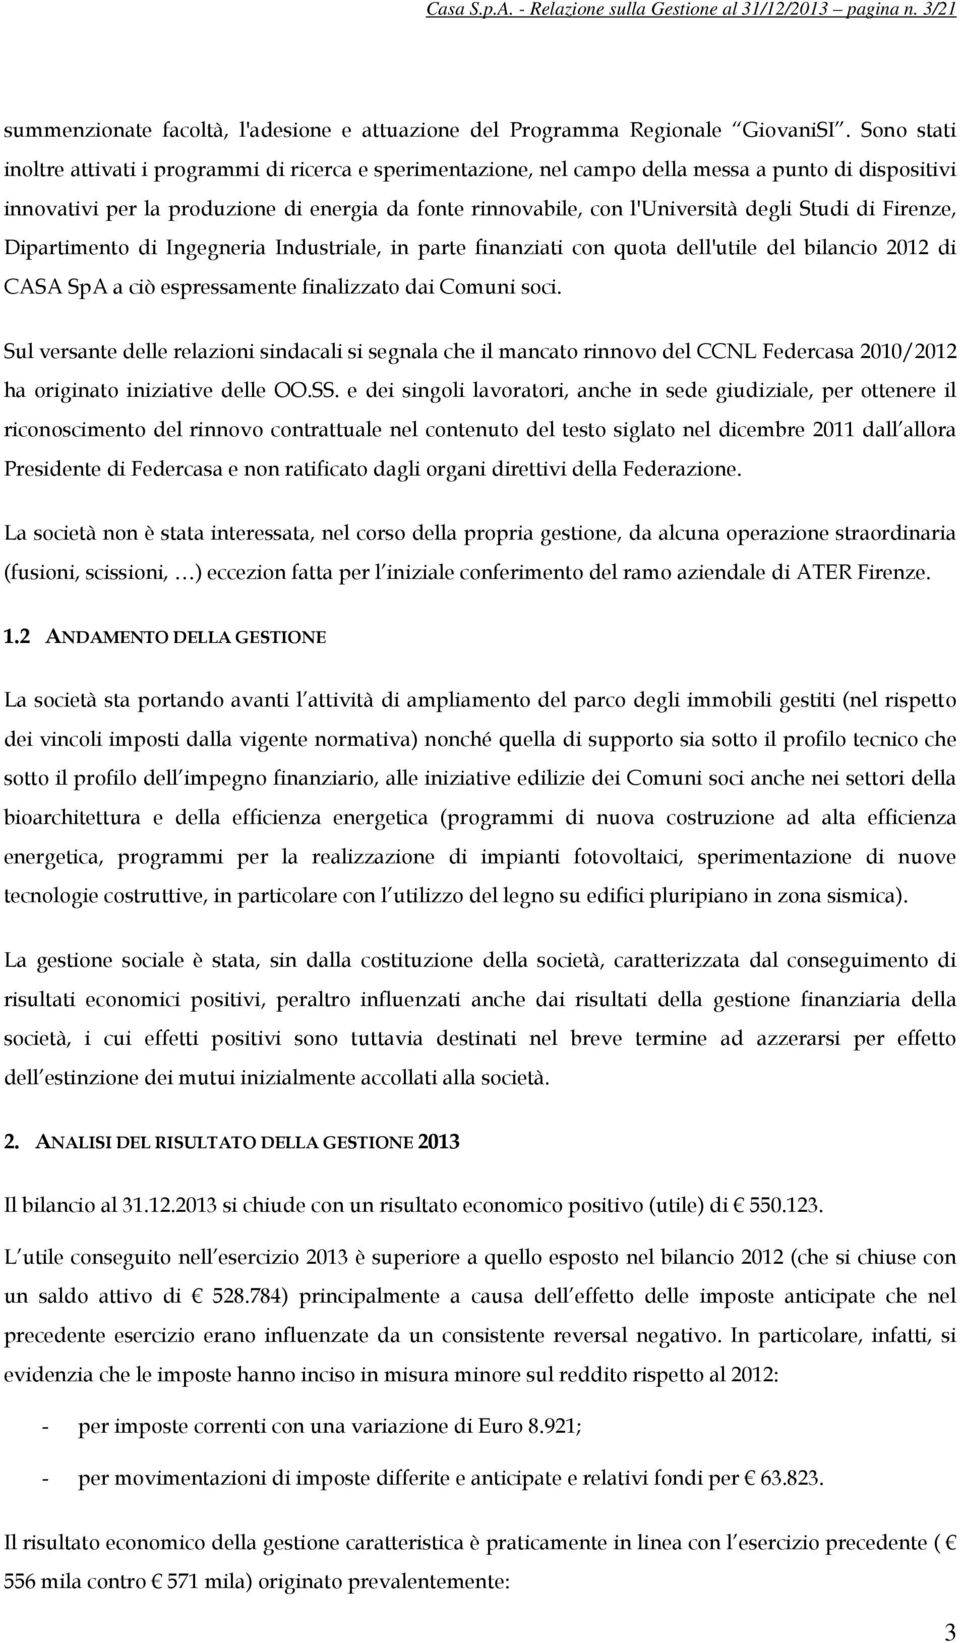 Studi di Firenze, Dipartimento di Ingegneria Industriale, in parte finanziati con quota dell'utile del bilancio 2012 di CASA SpA a ciò espressamente finalizzato dai Comuni soci.